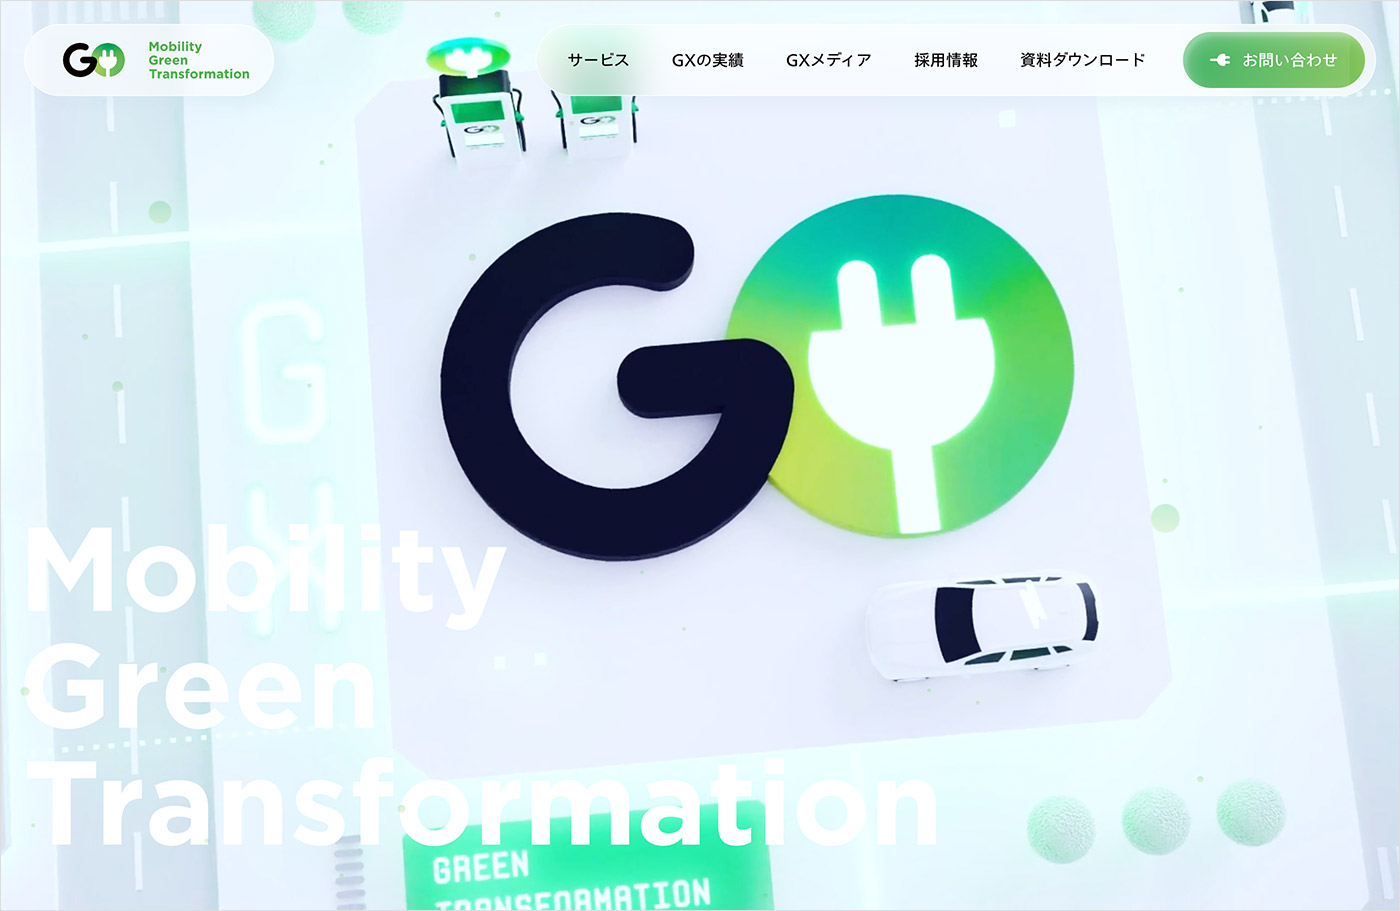 GO株式会社の脱炭素サービスGX | 脱炭素化に向けたEV関連サービスウェブサイトの画面キャプチャ画像